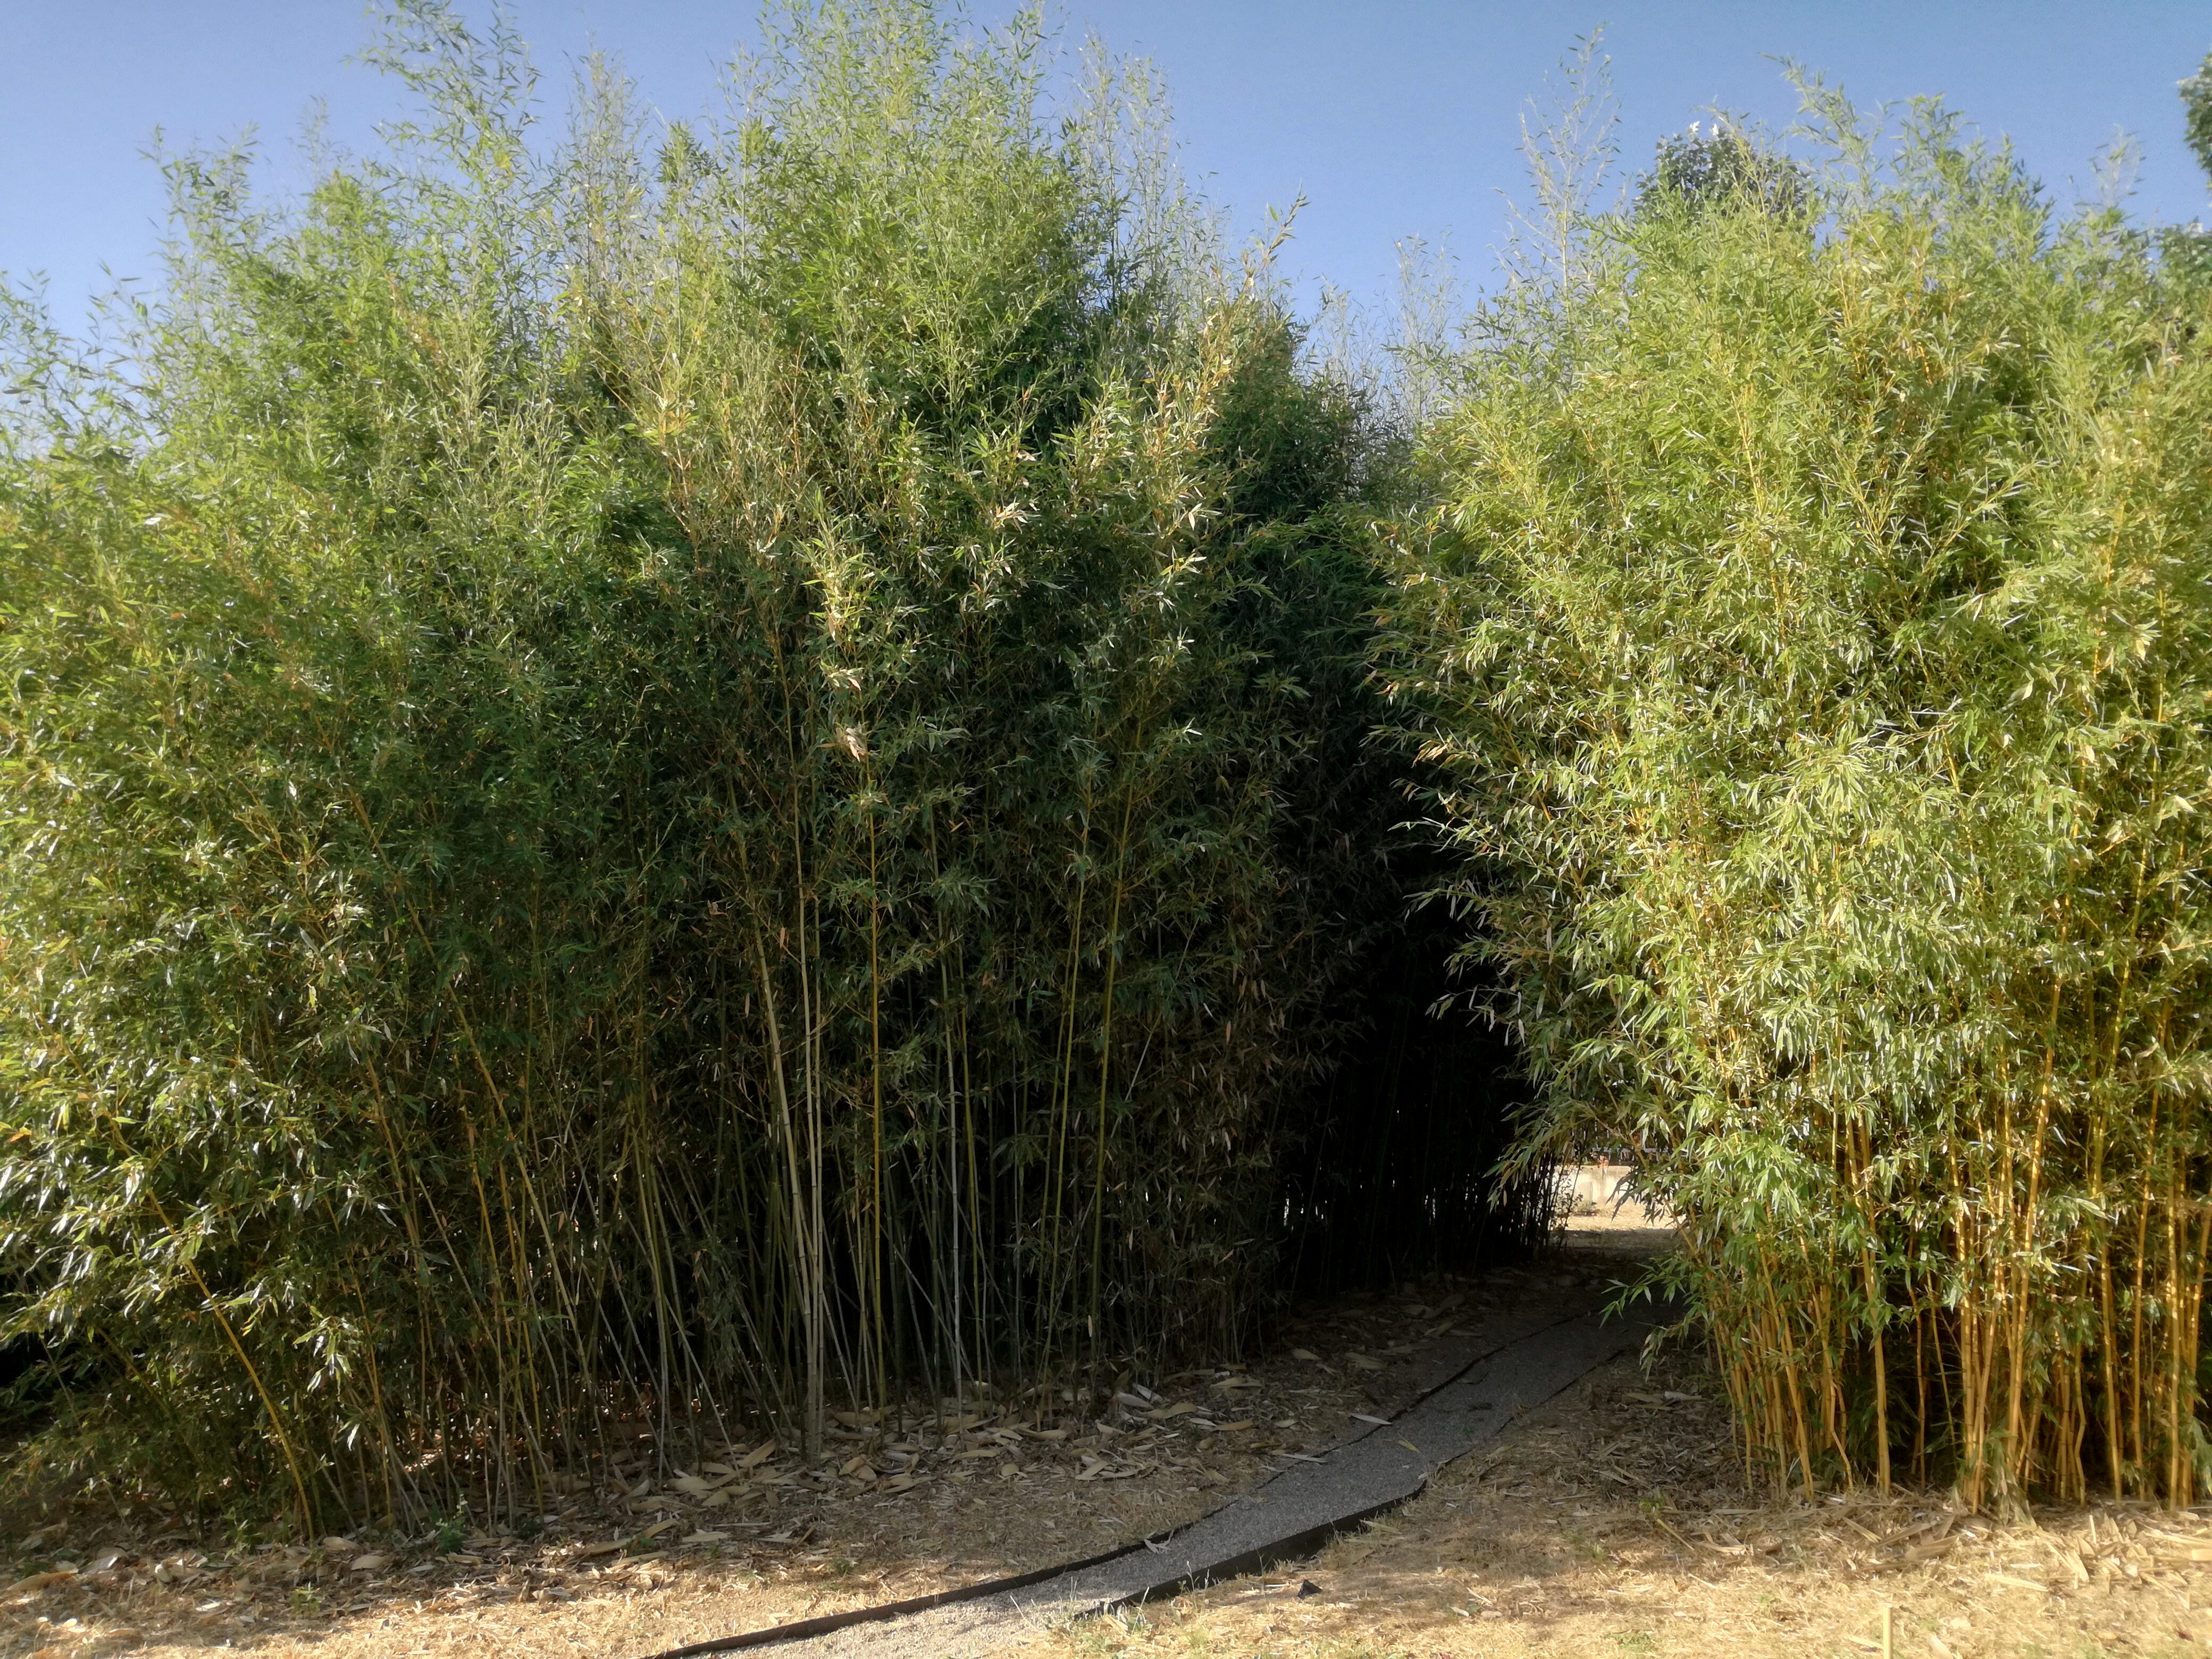 Identificat a l’Arborètum un parasitoide de pugó del bambú nova al continent europeu